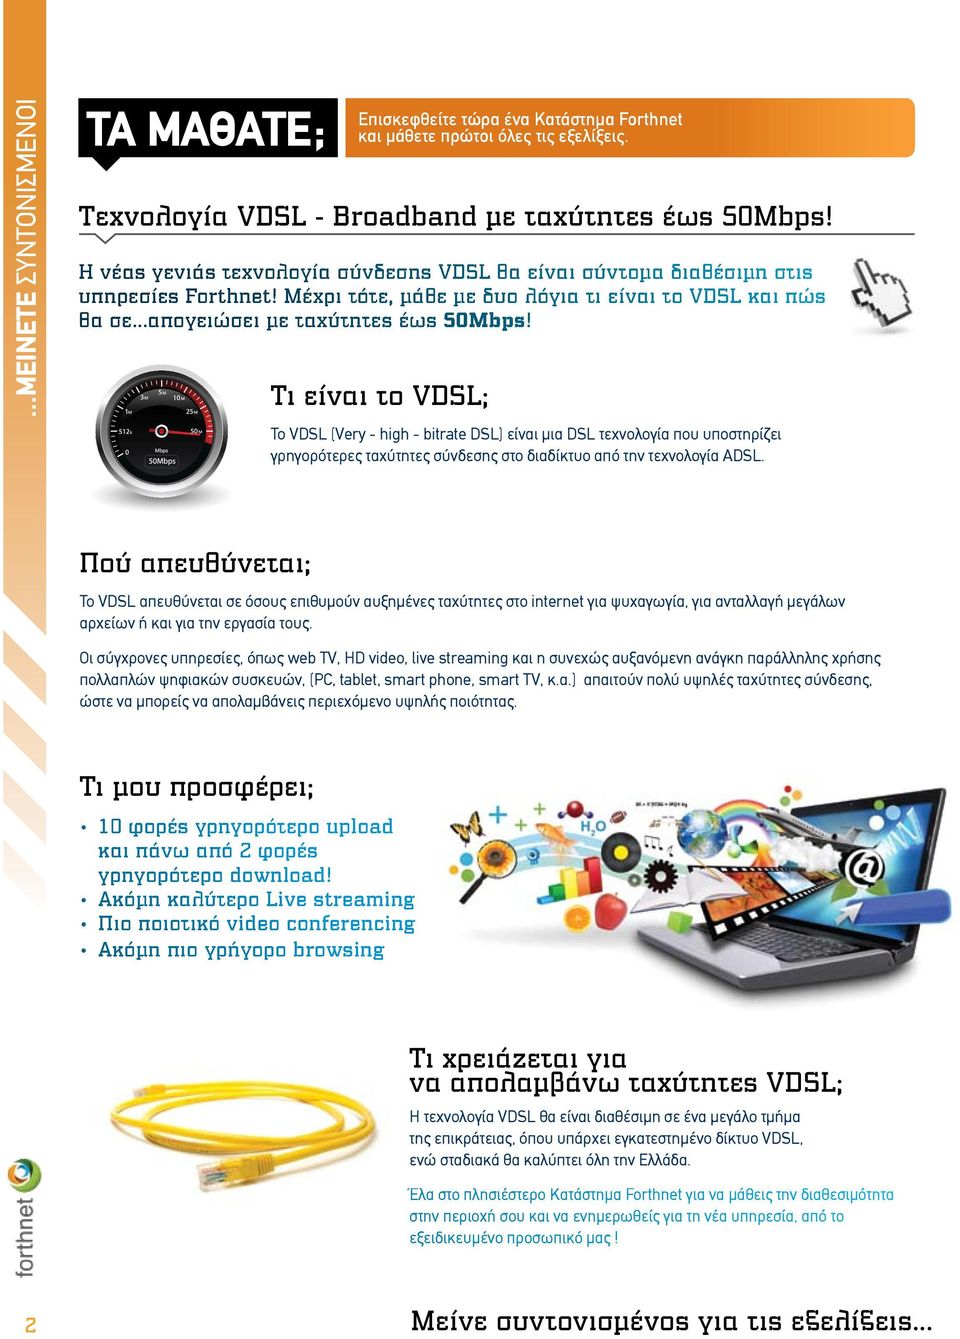 Πού απευθύνεται; Τι είναι το VDSL; Το VDSL (Very - high - bitrate DSL) είναι µια DSL τεχνολογία που υποστηρίζει γρηγορότερες ταχύτητες σύνδεσης στο διαδίκτυο από την τεχνολογία ADSL.